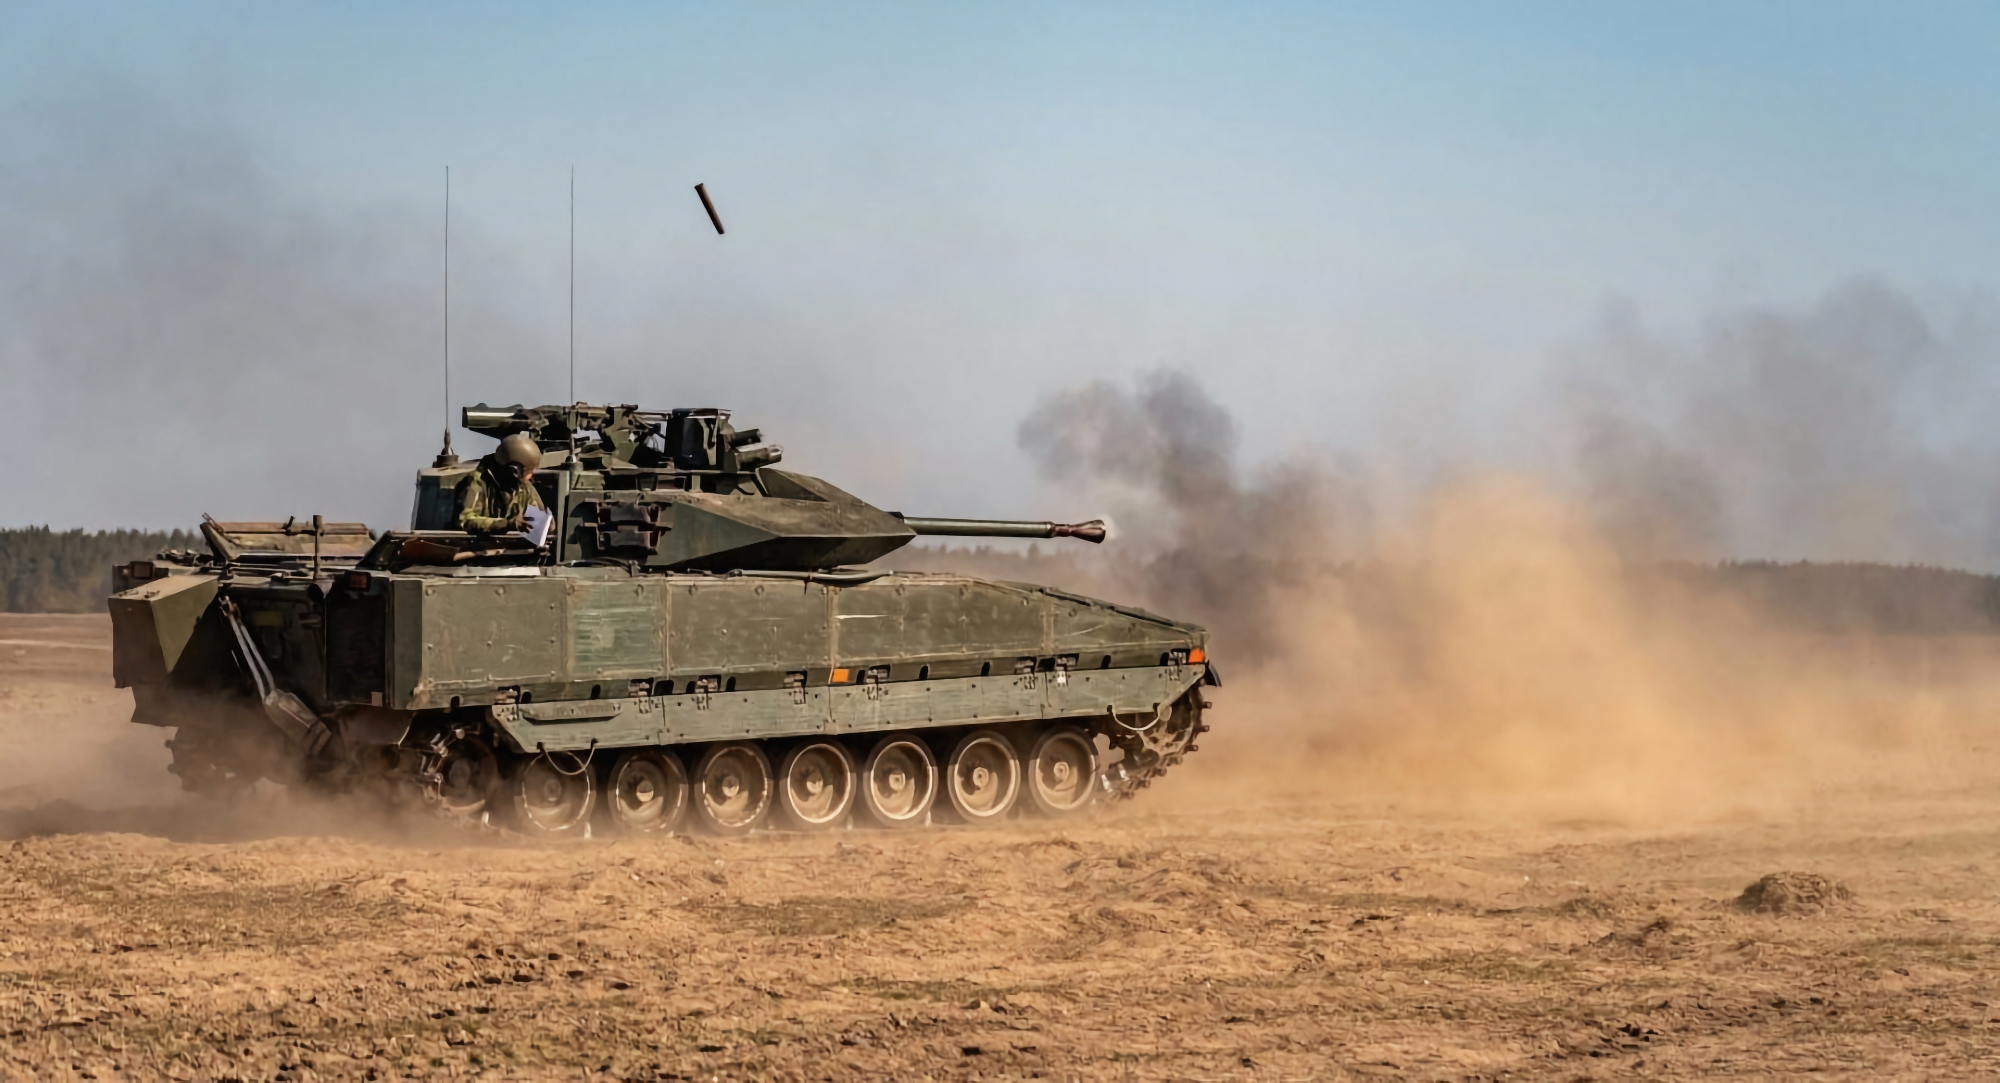 Oekraïne is samen met Zweden van plan 1000 CV90 infanteriegevechtsvoertuigen te produceren voor de AFU